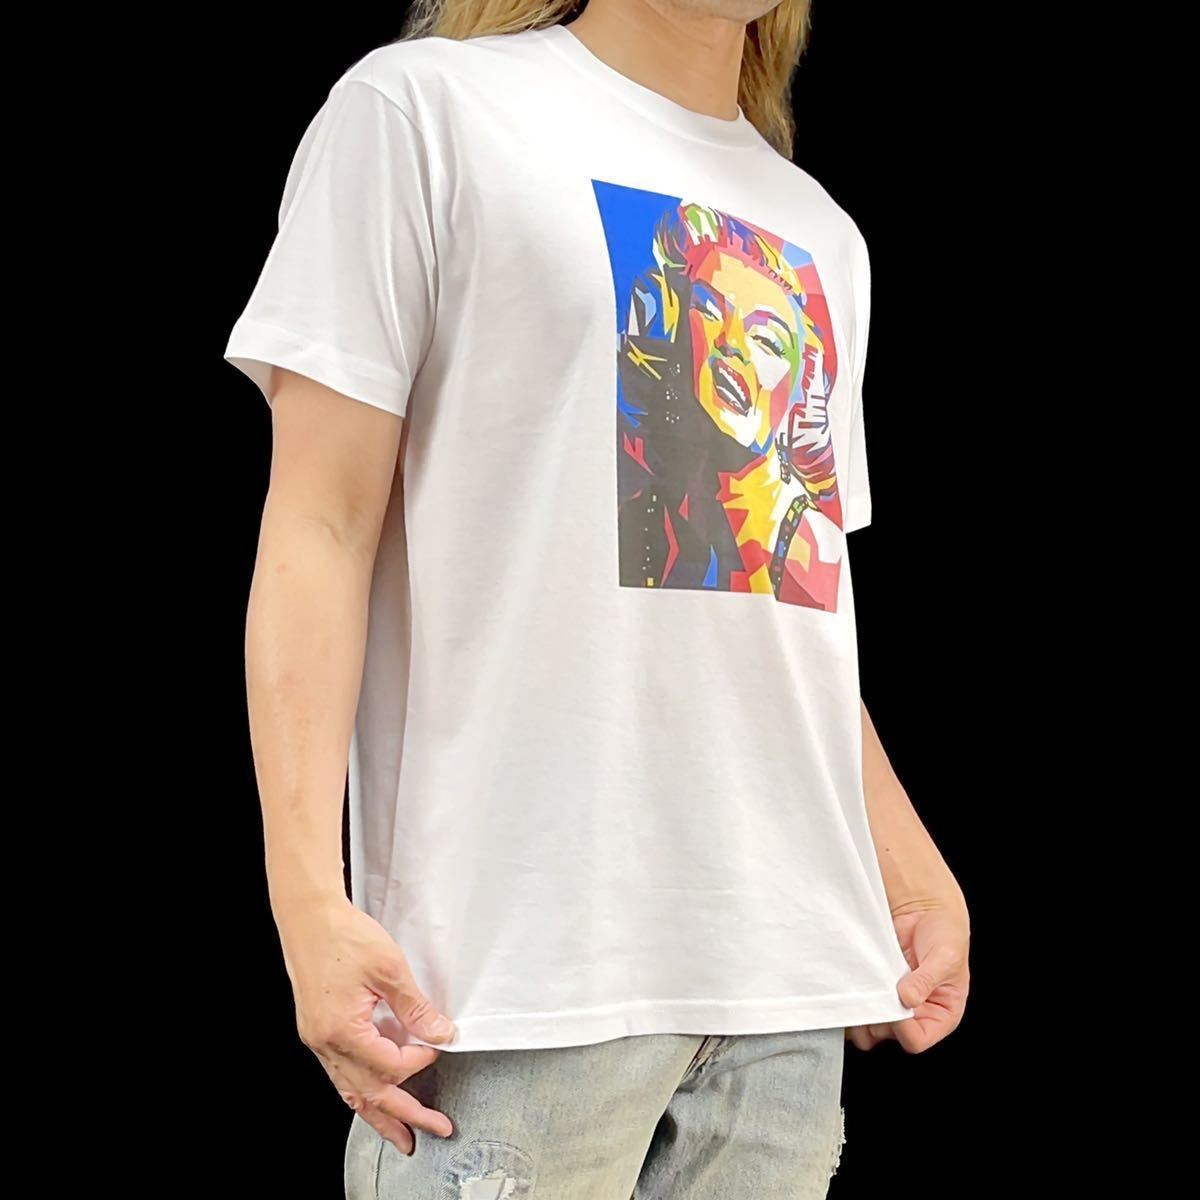 新品 マリリンモンロー 20世紀 セックスシンボル ハリウッド黄金期 映画 ブロンド女優 ポップアート Tシャツ Sサイズ 小さい タイト スリム_画像3